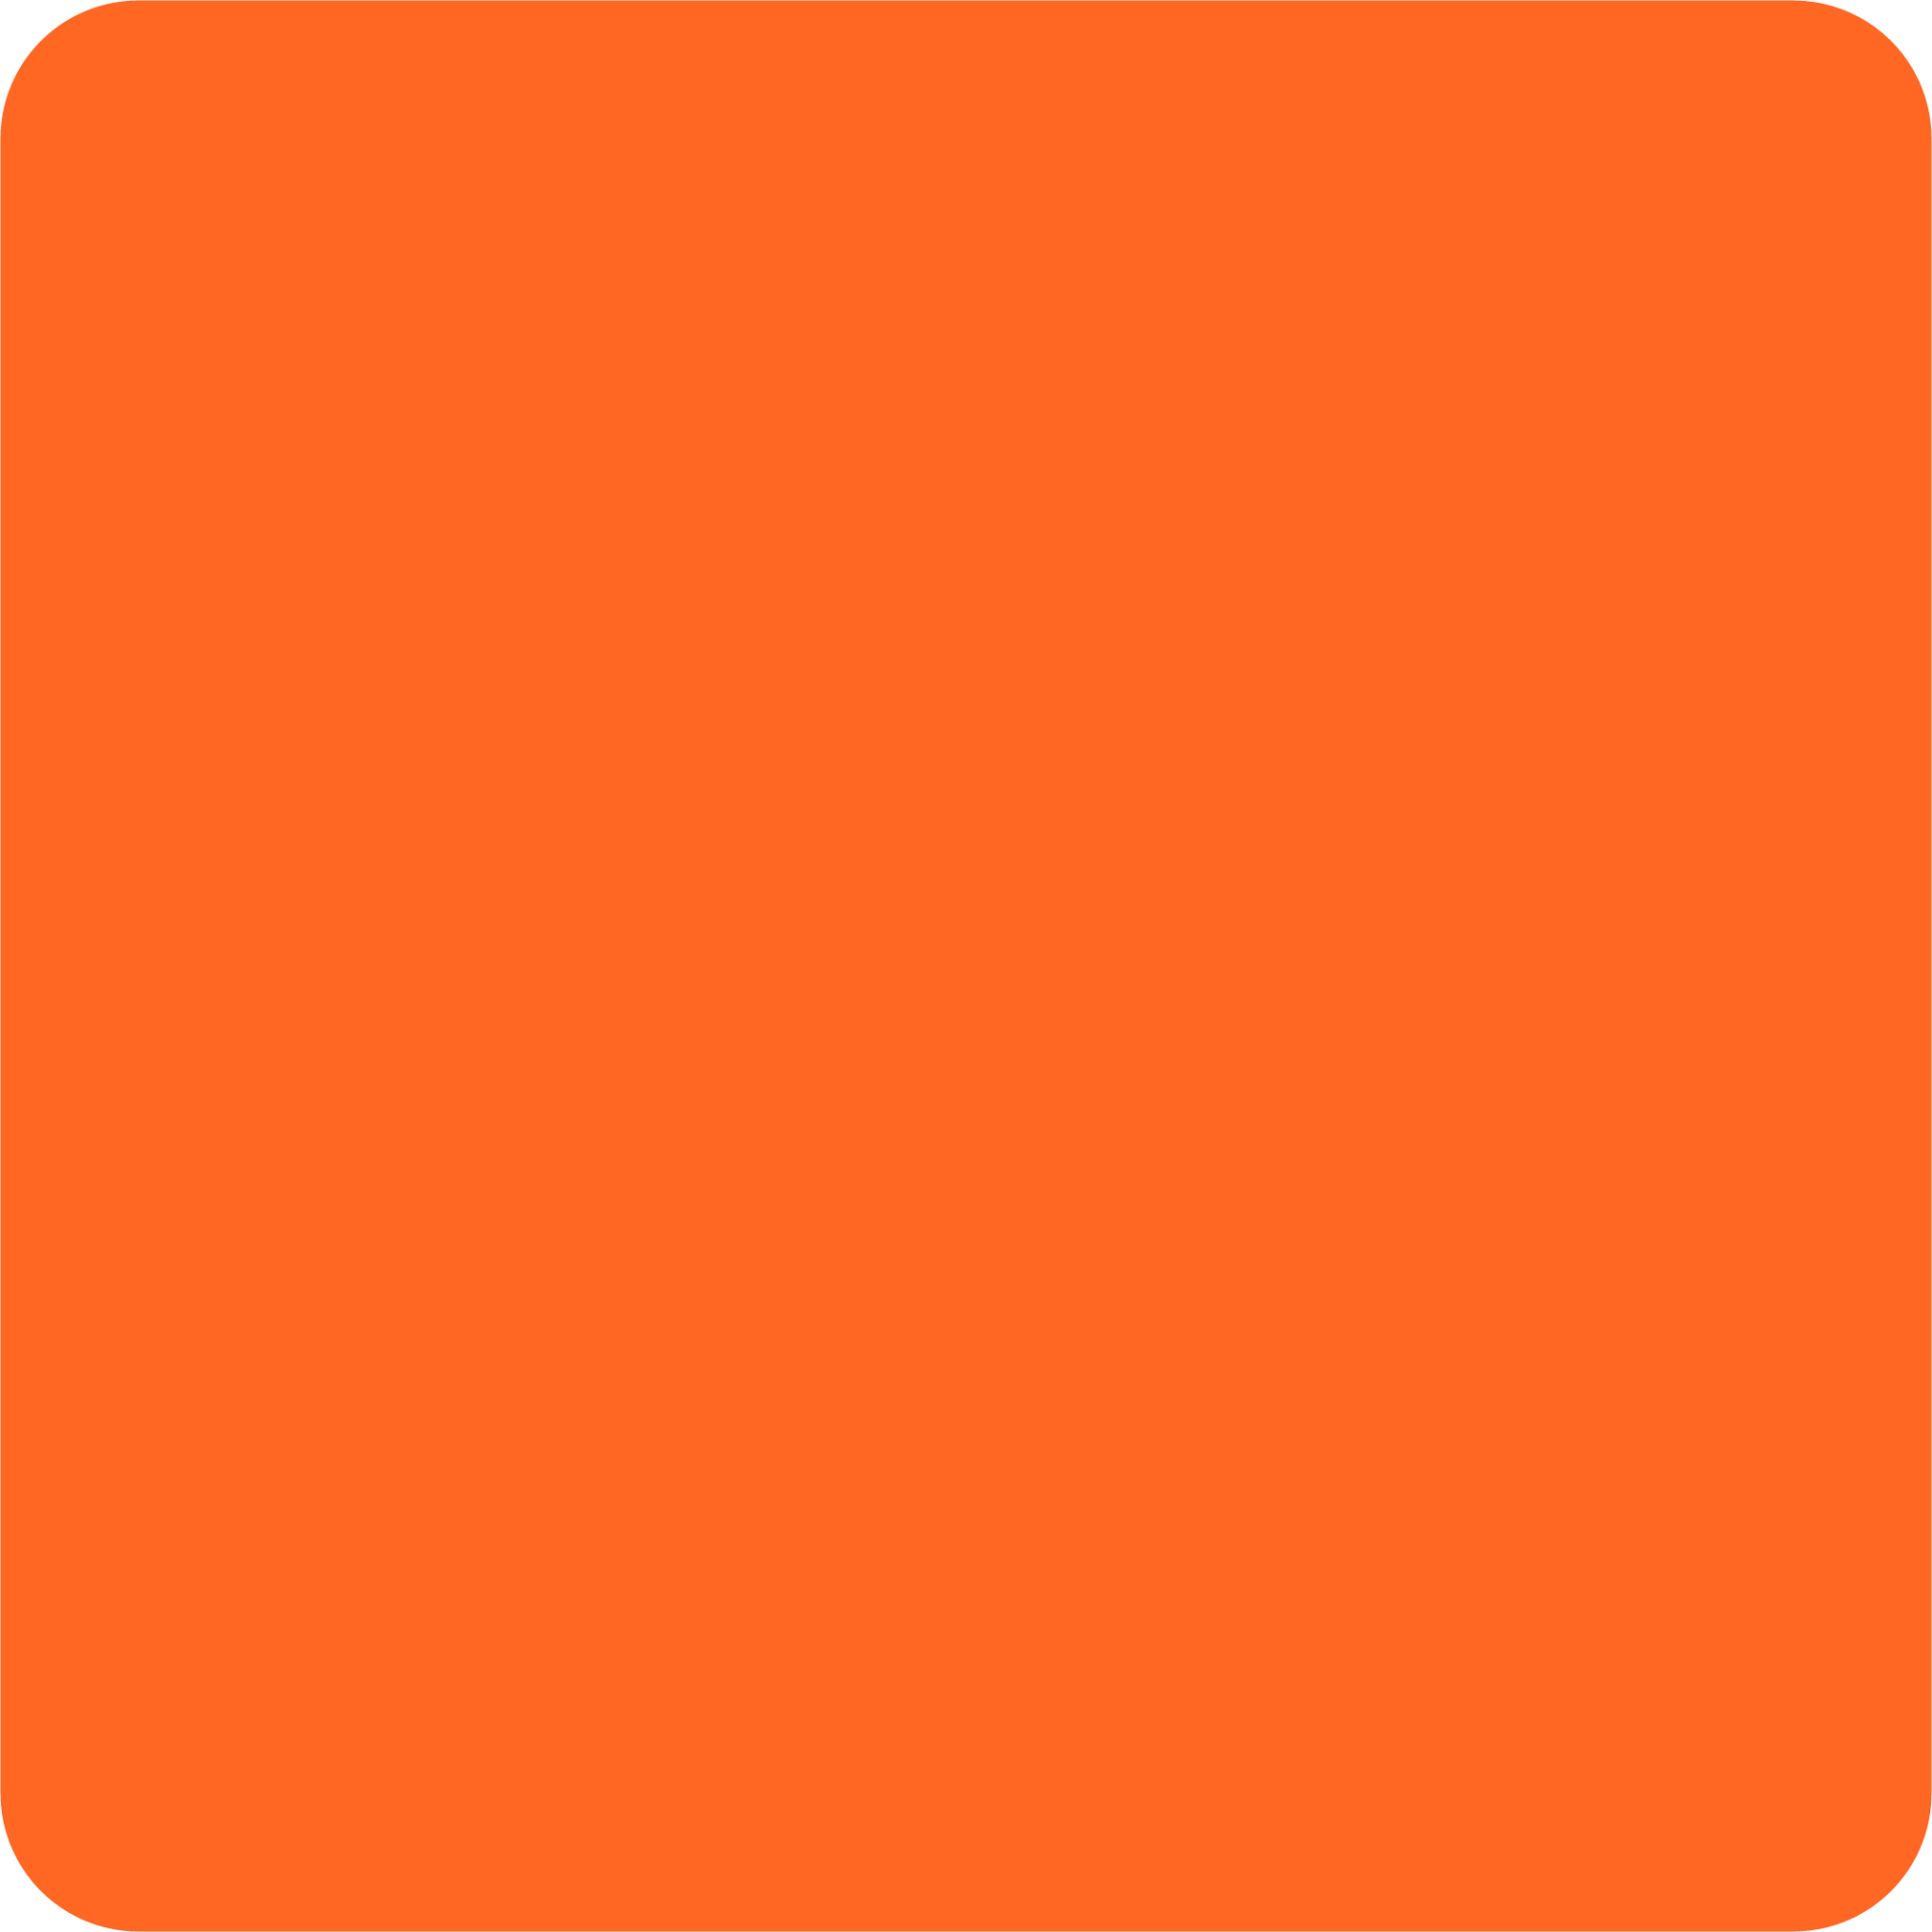 orange square emoji